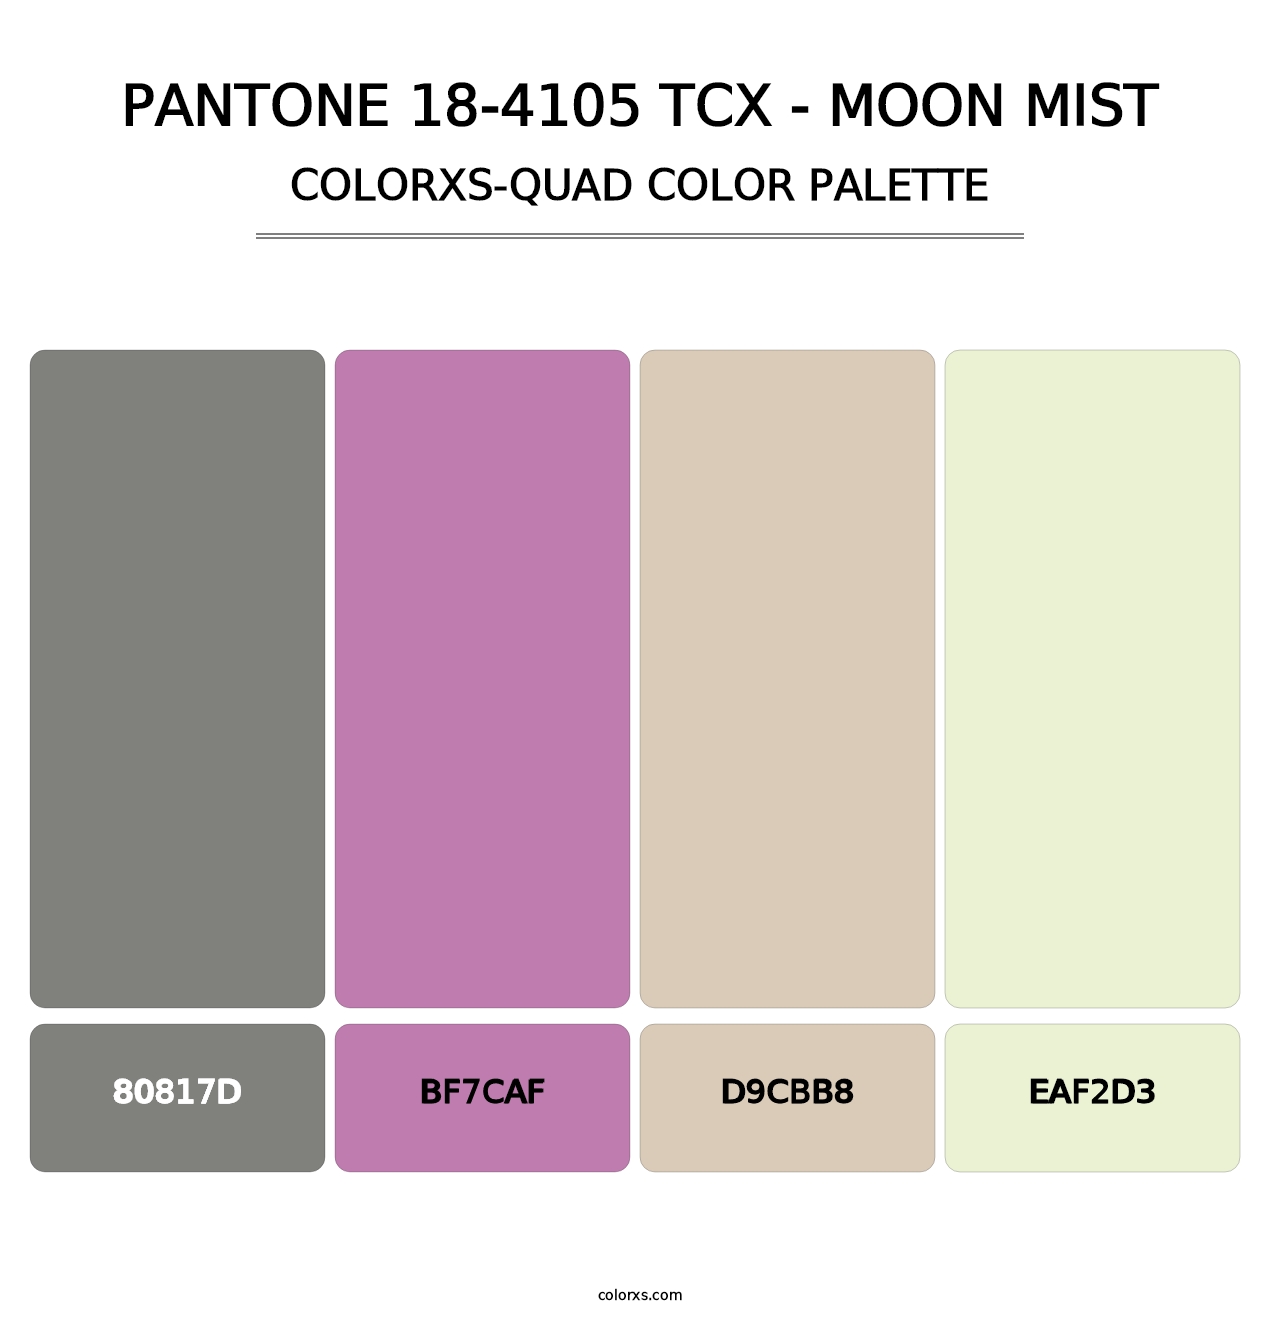 PANTONE 18-4105 TCX - Moon Mist - Colorxs Quad Palette